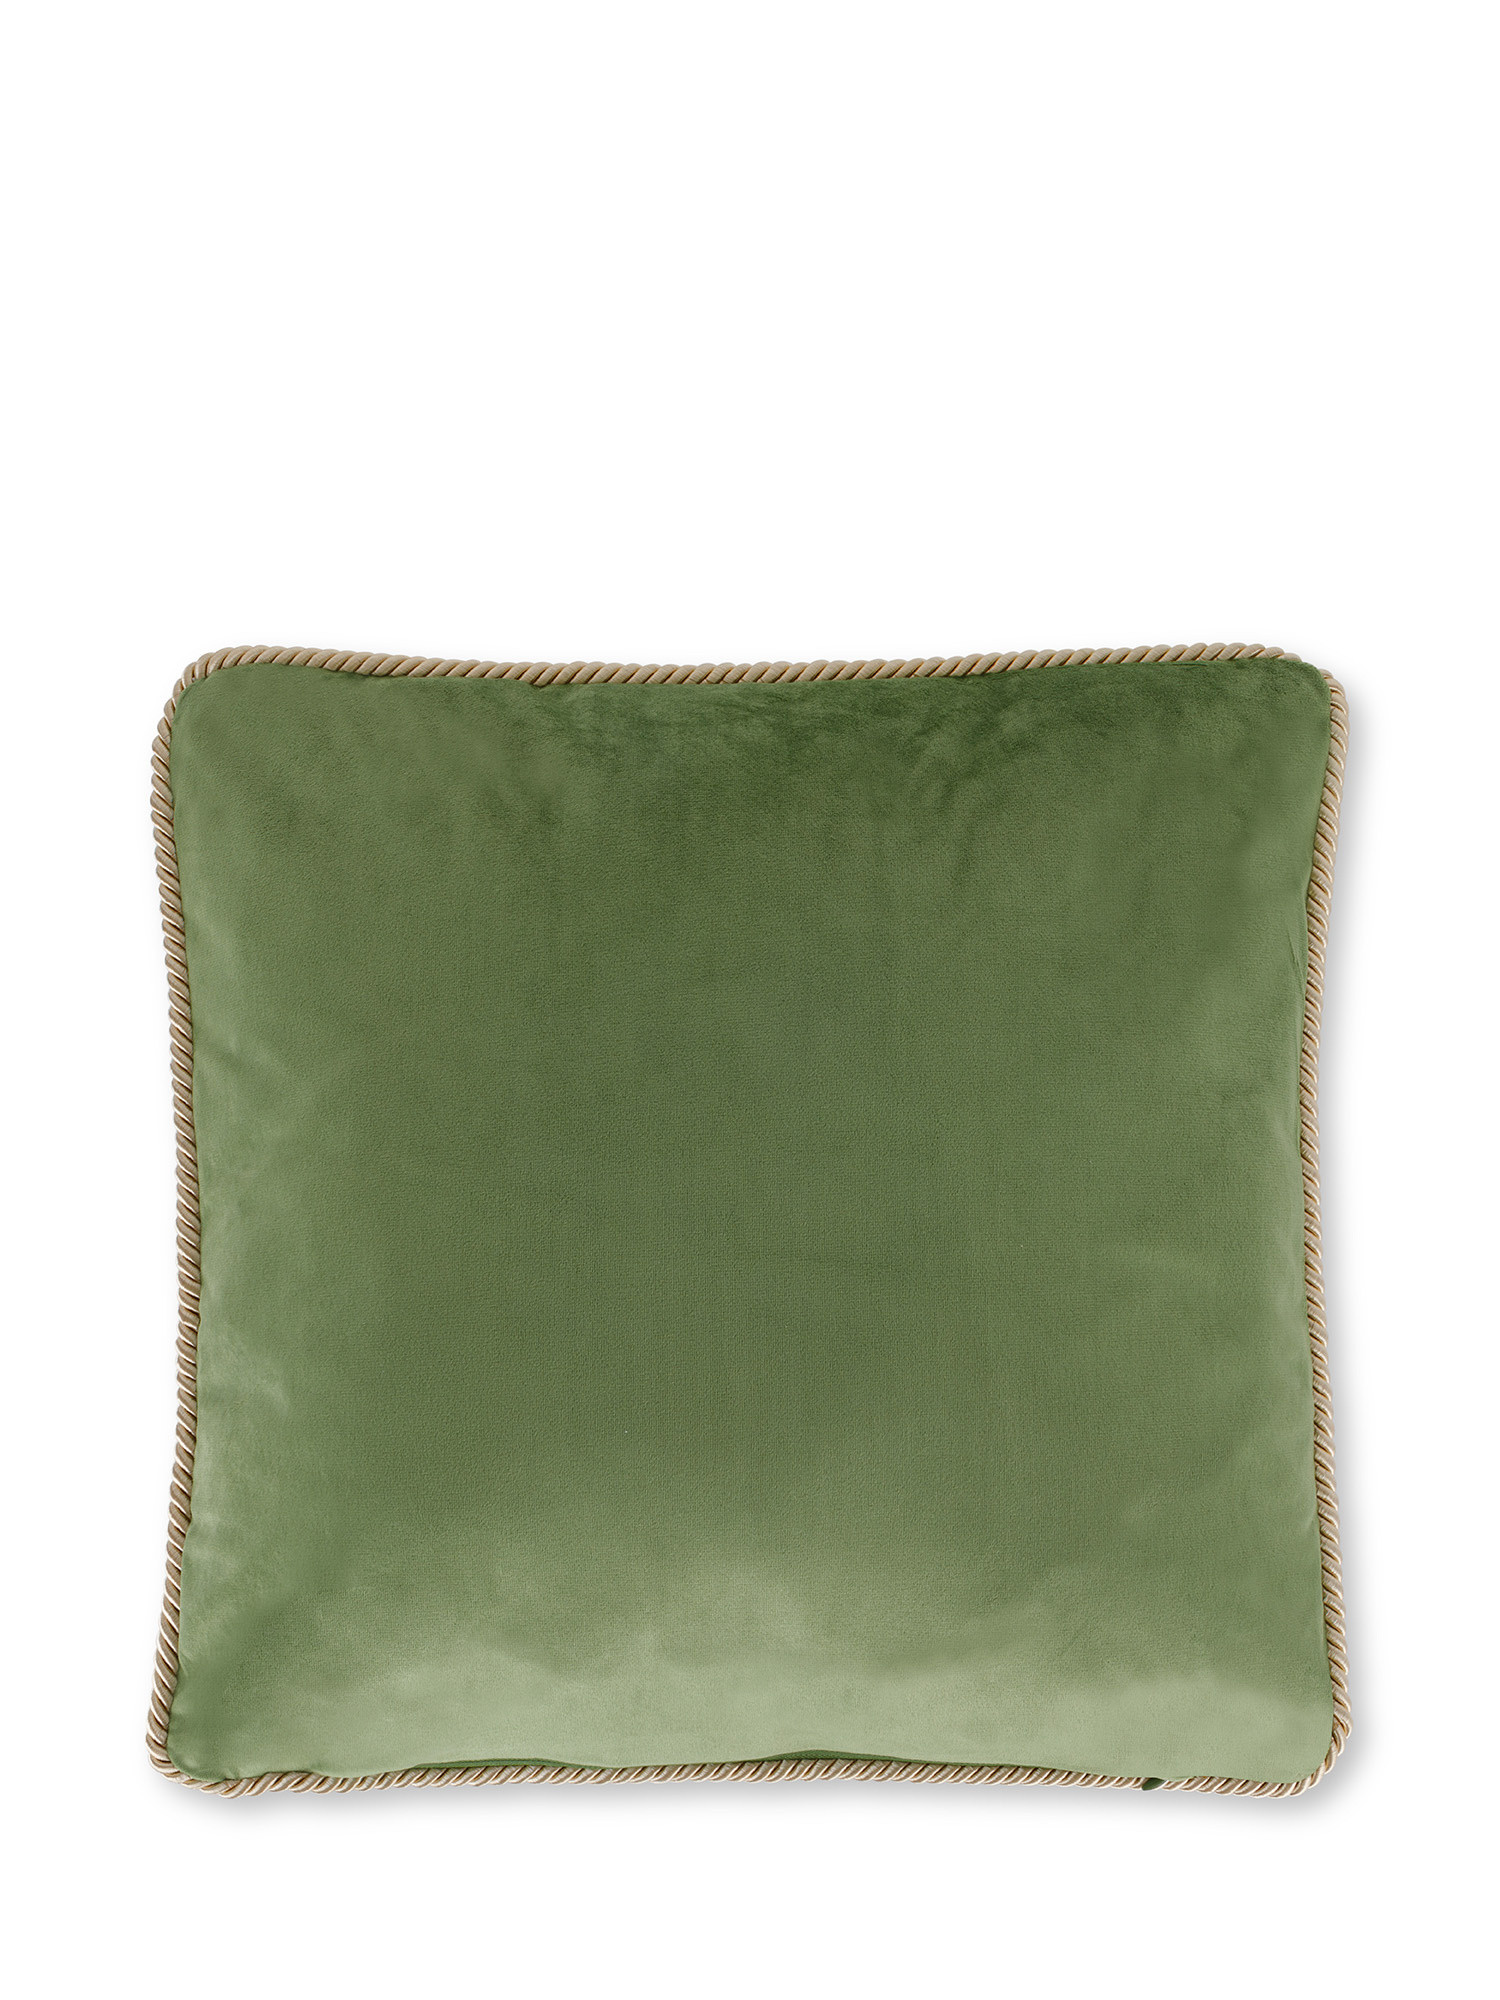 Cuscino in velluto bicolore 45x45 cm, Verde, large image number 1